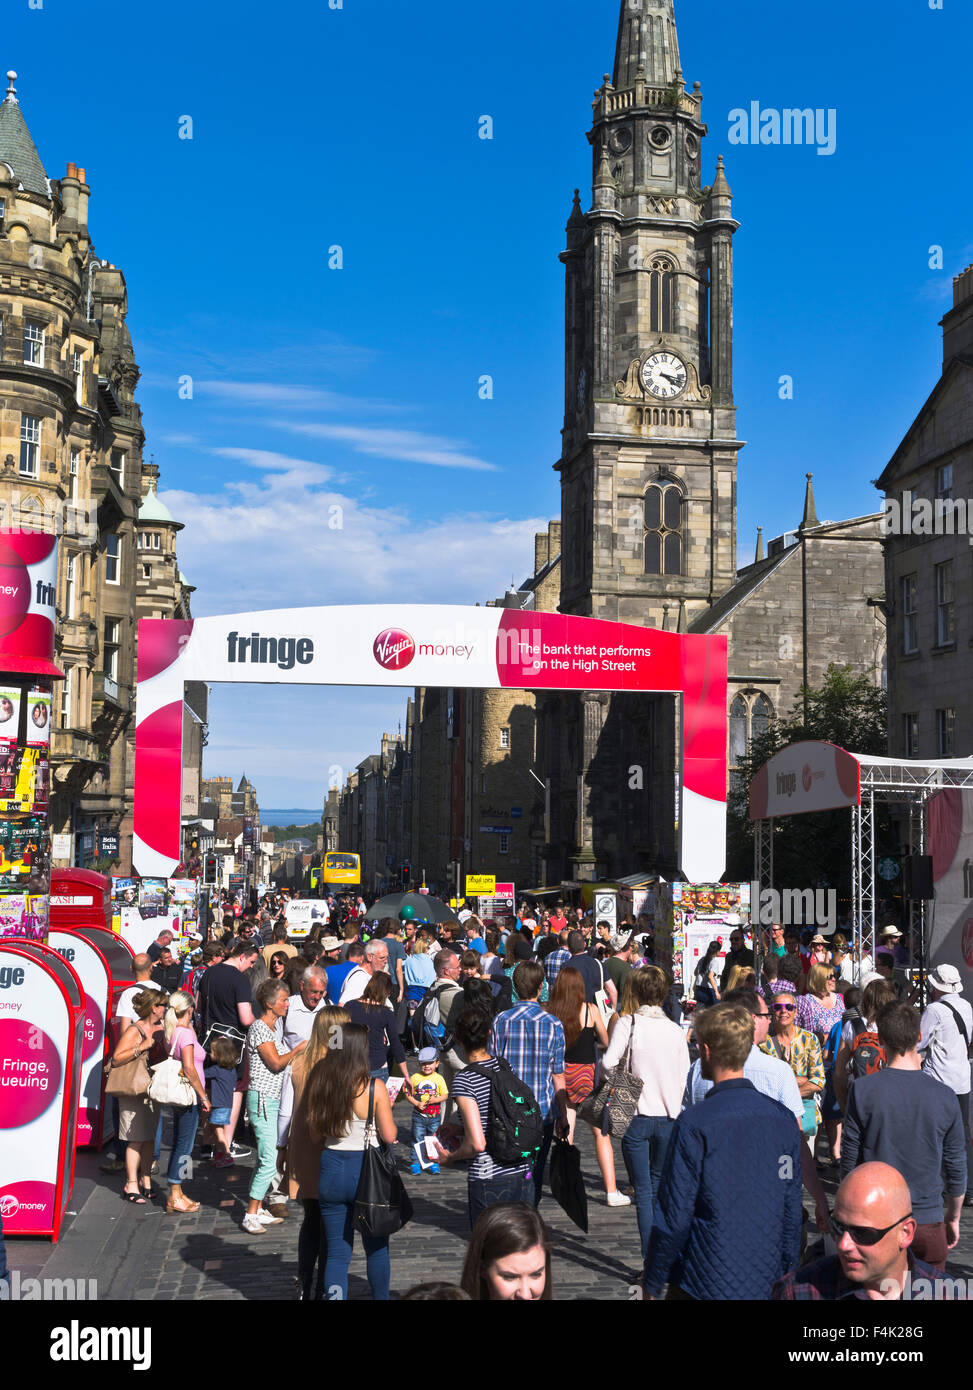 dh Edinburgh Fringe Festival ROYAL MILE EDINBURGH SCOTLAND les touristes été soleil rue foule ville les foules animées attirent les touristes Banque D'Images